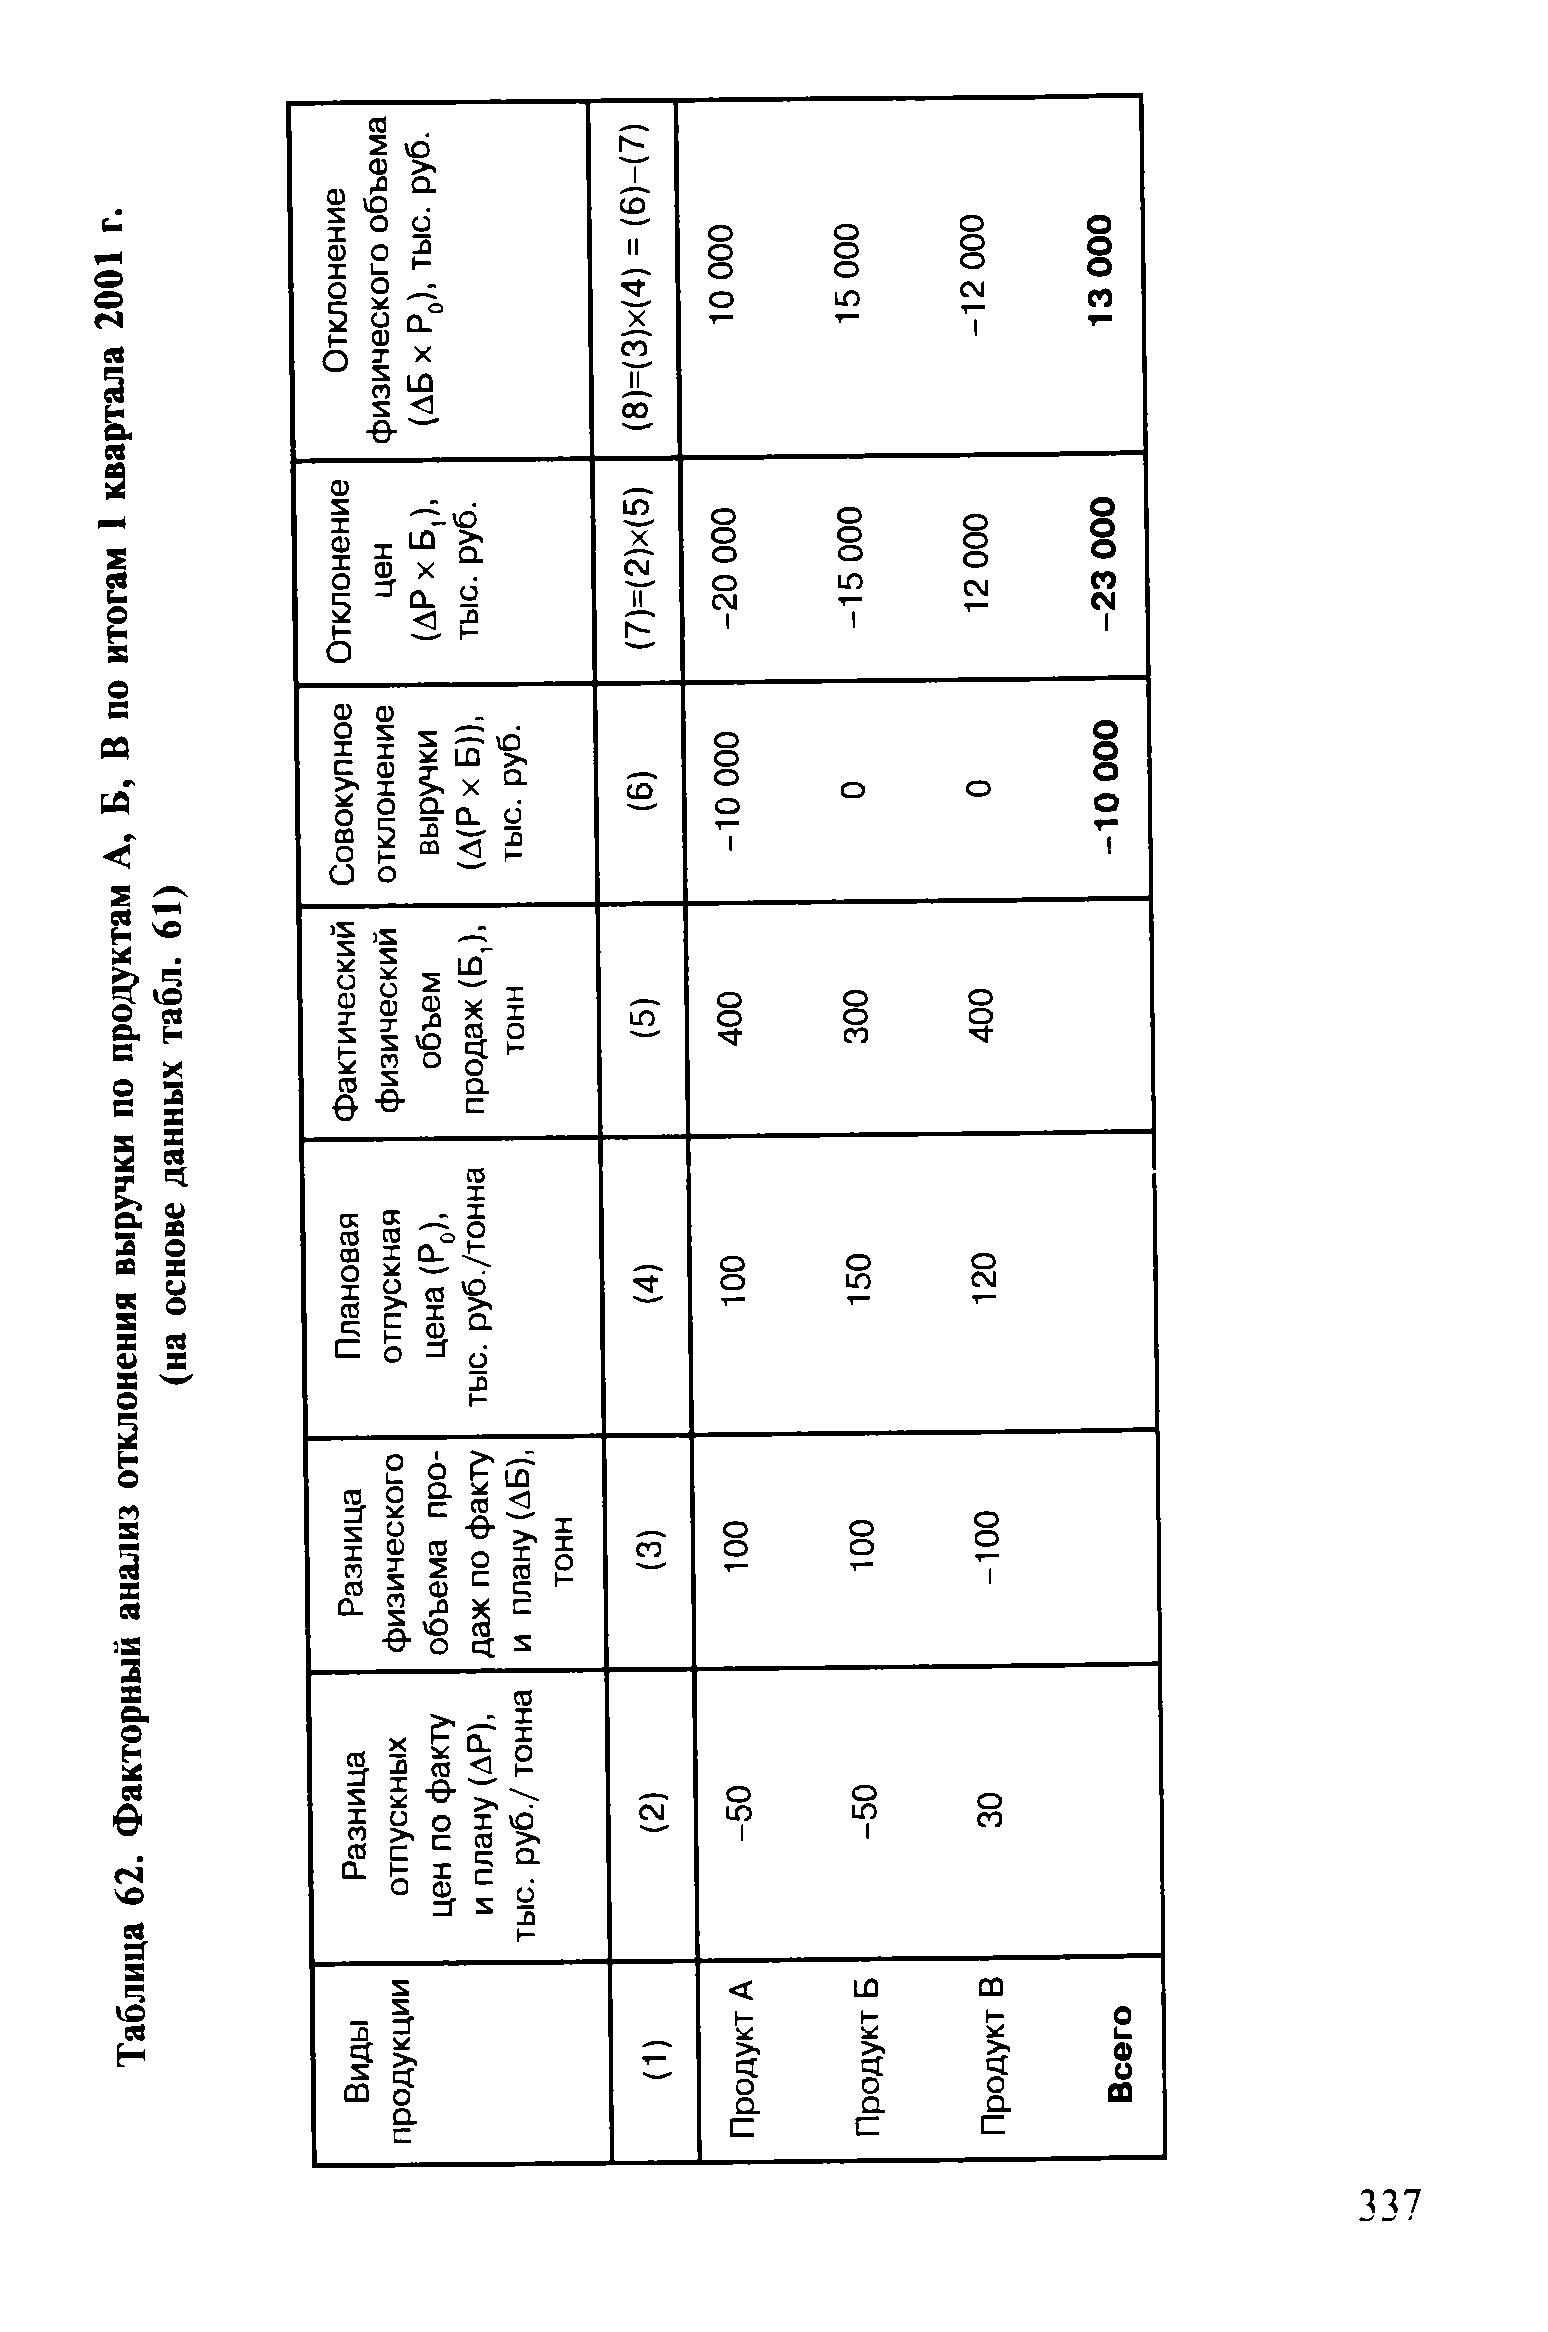 Таблица 62. Факторный анализ отклонения выручки по продуктам А, Б, В по итогам 1 квартала 2001 г.
